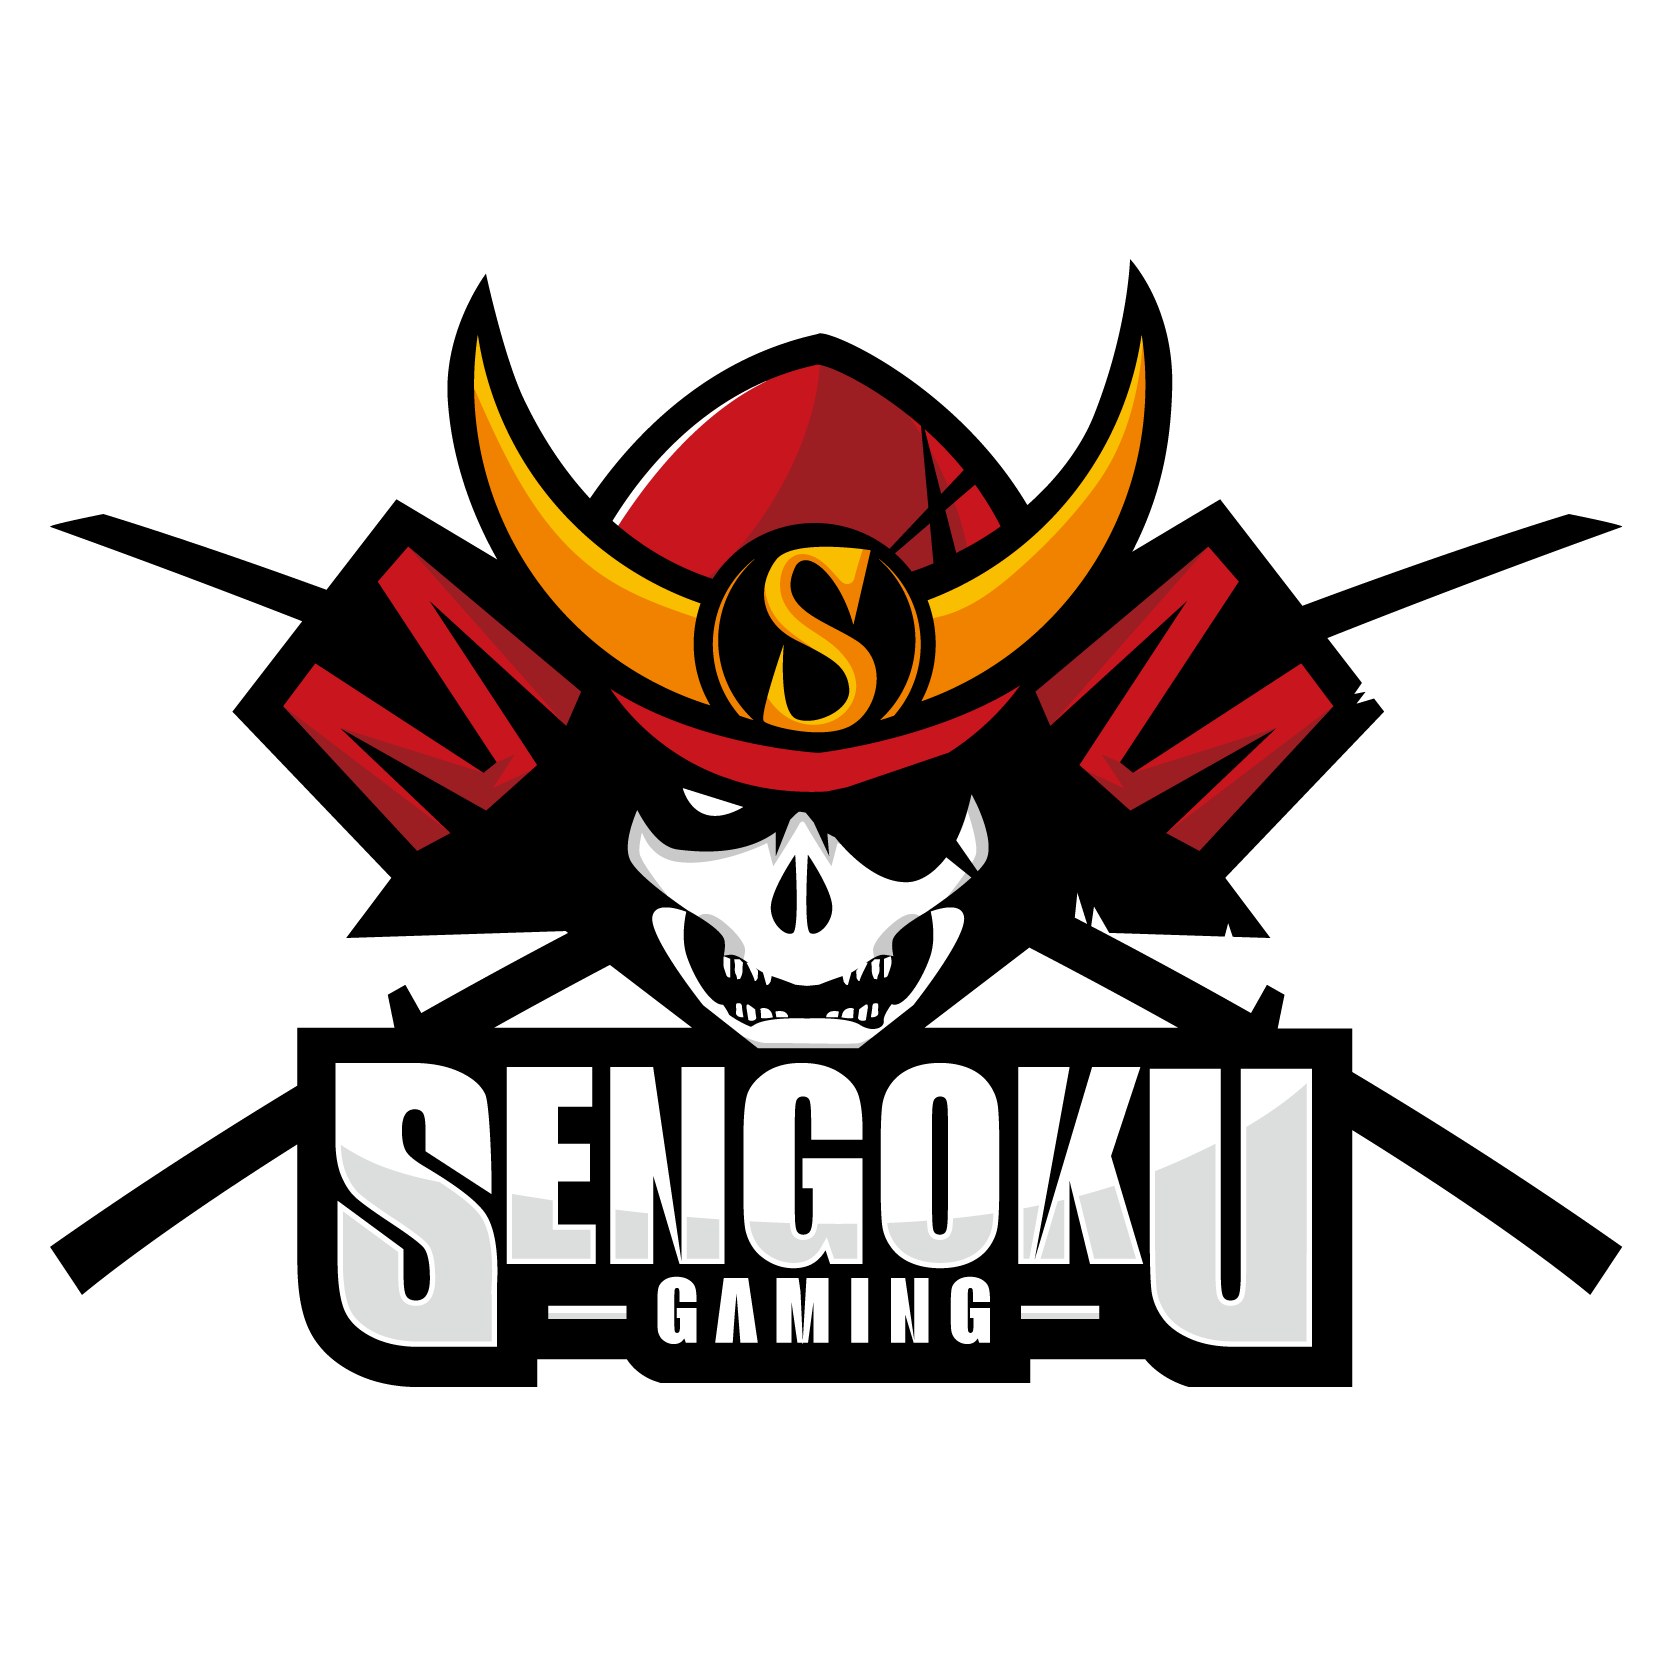 プロeスポーツチーム Sengoku Gaming 幅広い年齢層に人気の Fortnite部門 を新設 Arthur選手が加入 株式会社戦国のプレスリリース